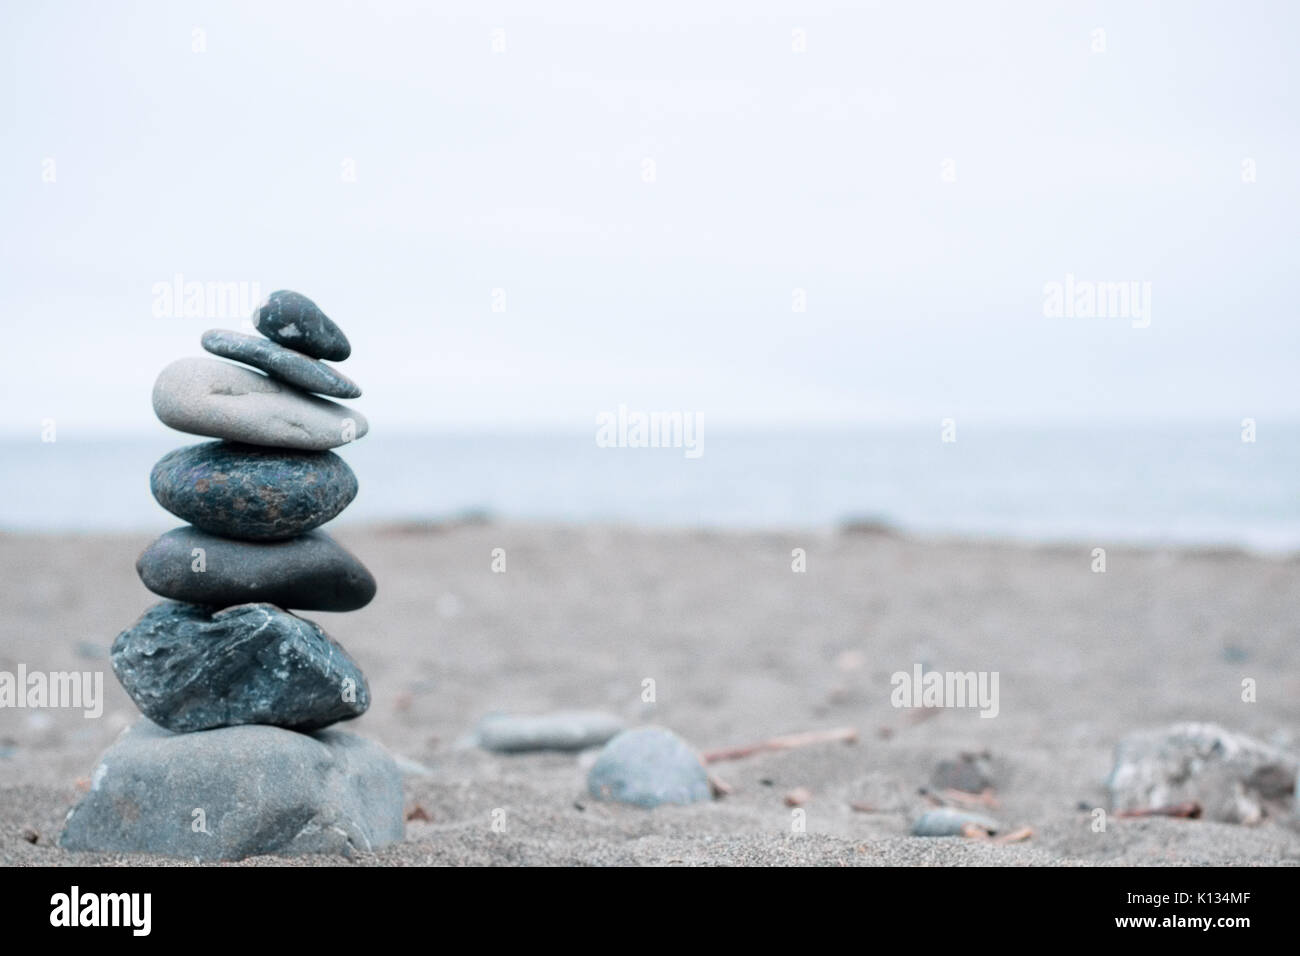 Monocromo Azul, sereno, rocas apiladas en una playa de California que simbolizan la paz, equilibrio, meditación y Mindfulness Foto de stock